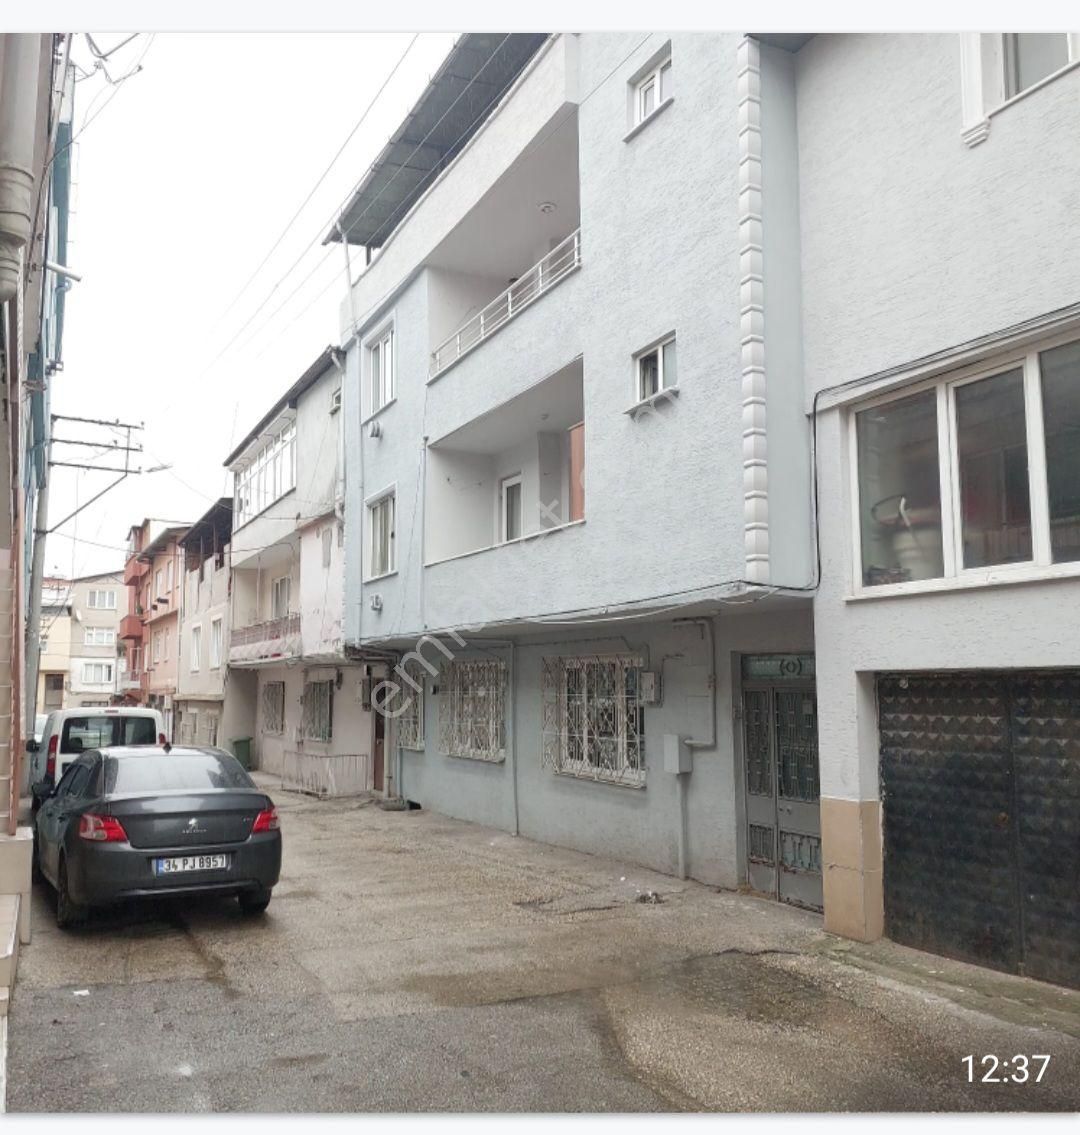 Osmangazi Bağlarbaşı Satılık Müstakil Ev Bursa Bağlarbaşı,nda satılık 3 katlı müstakil ev